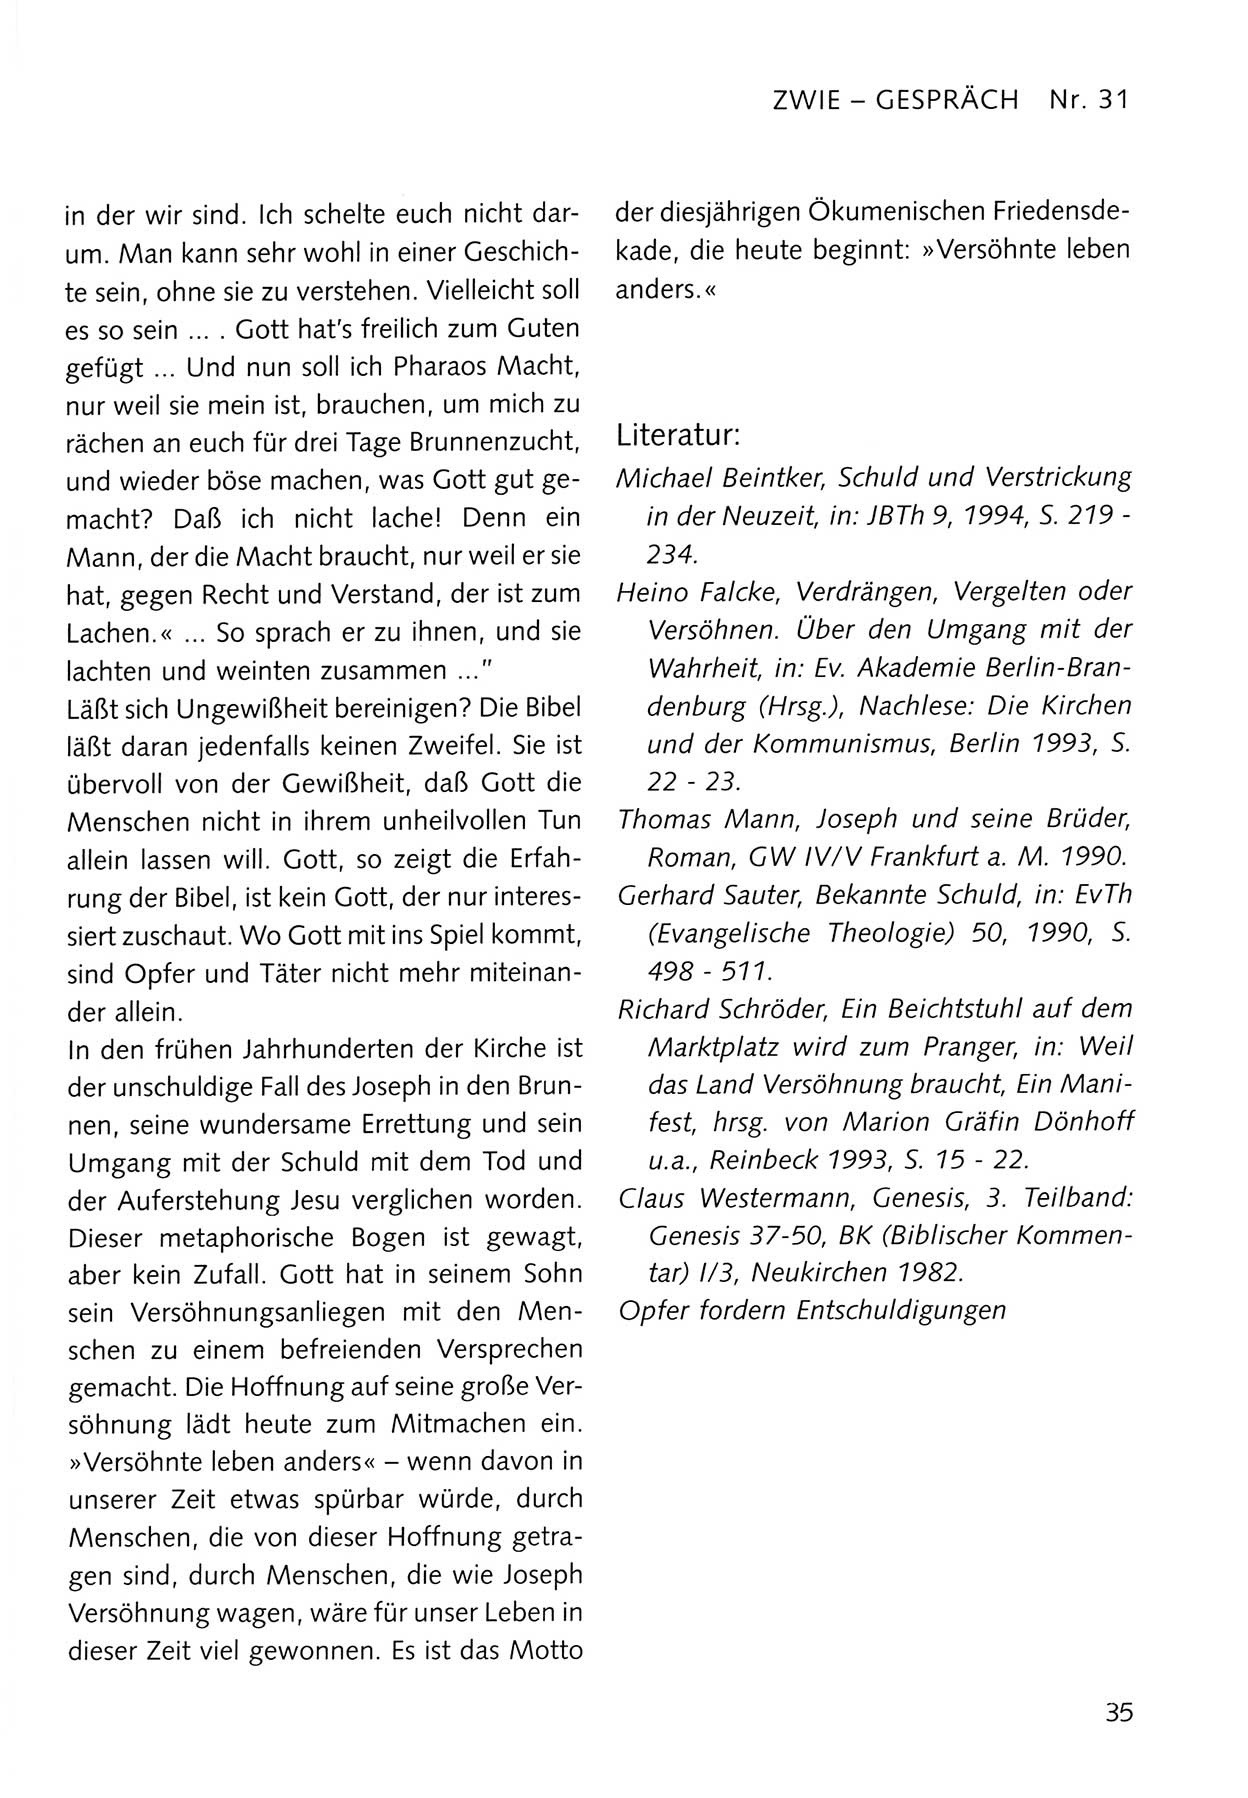 Zwie-Gespräch, Beiträge zum Umgang mit der Staatssicherheits-Vergangenheit [Deutsche Demokratische Republik (DDR)], Ausgabe Nr. 31, Berlin 1995, Seite 35 (Zwie-Gespr. Ausg. 31 1995, S. 35)